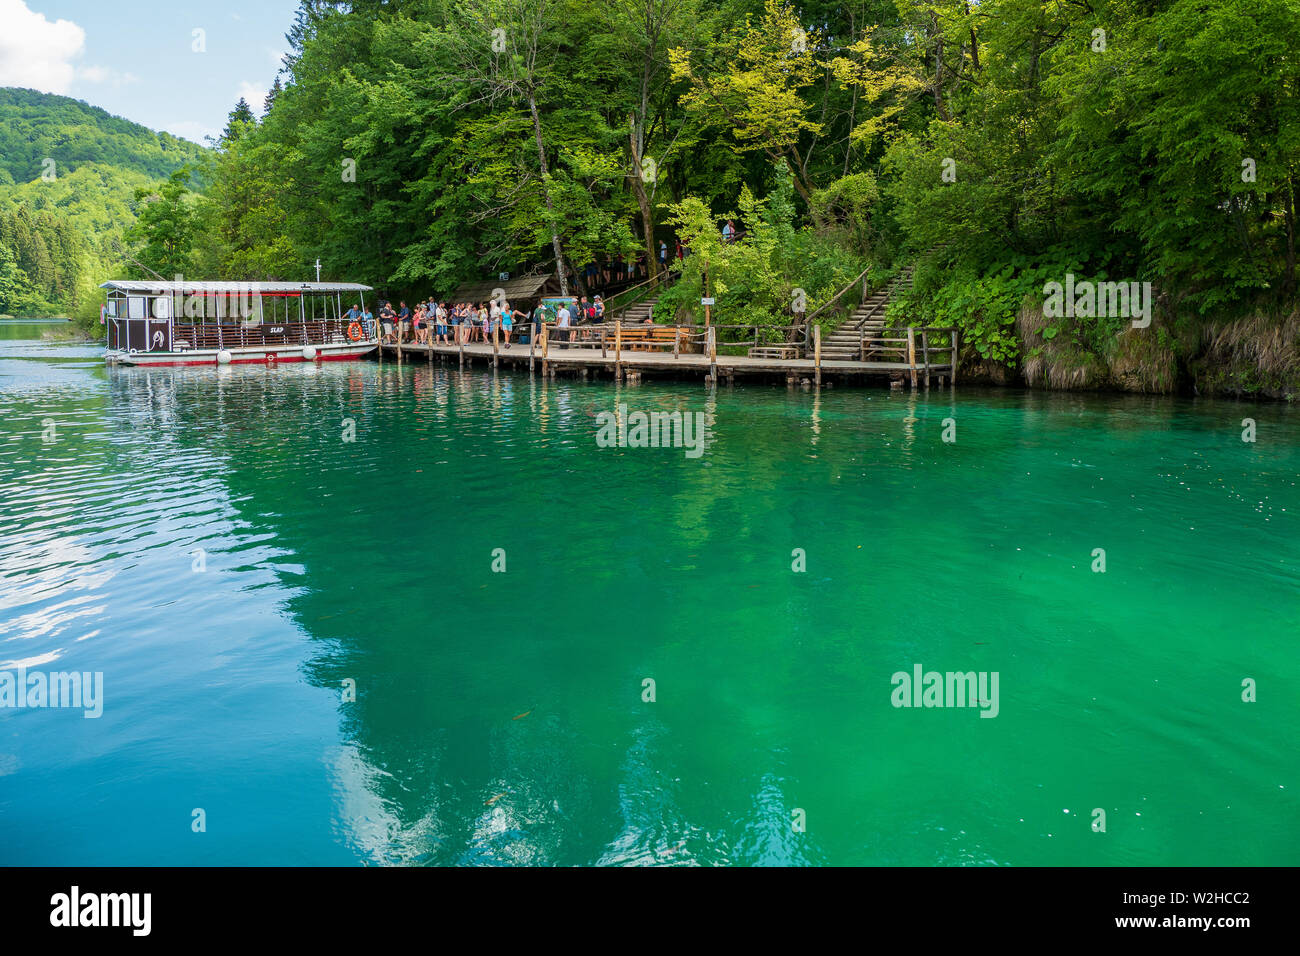 Traghetto ormeggiato al molo presso il colore azzurro cristallino puro e il Lago Kozjak, il Parco Nazionale dei Laghi di Plitvice, Croazia Foto Stock